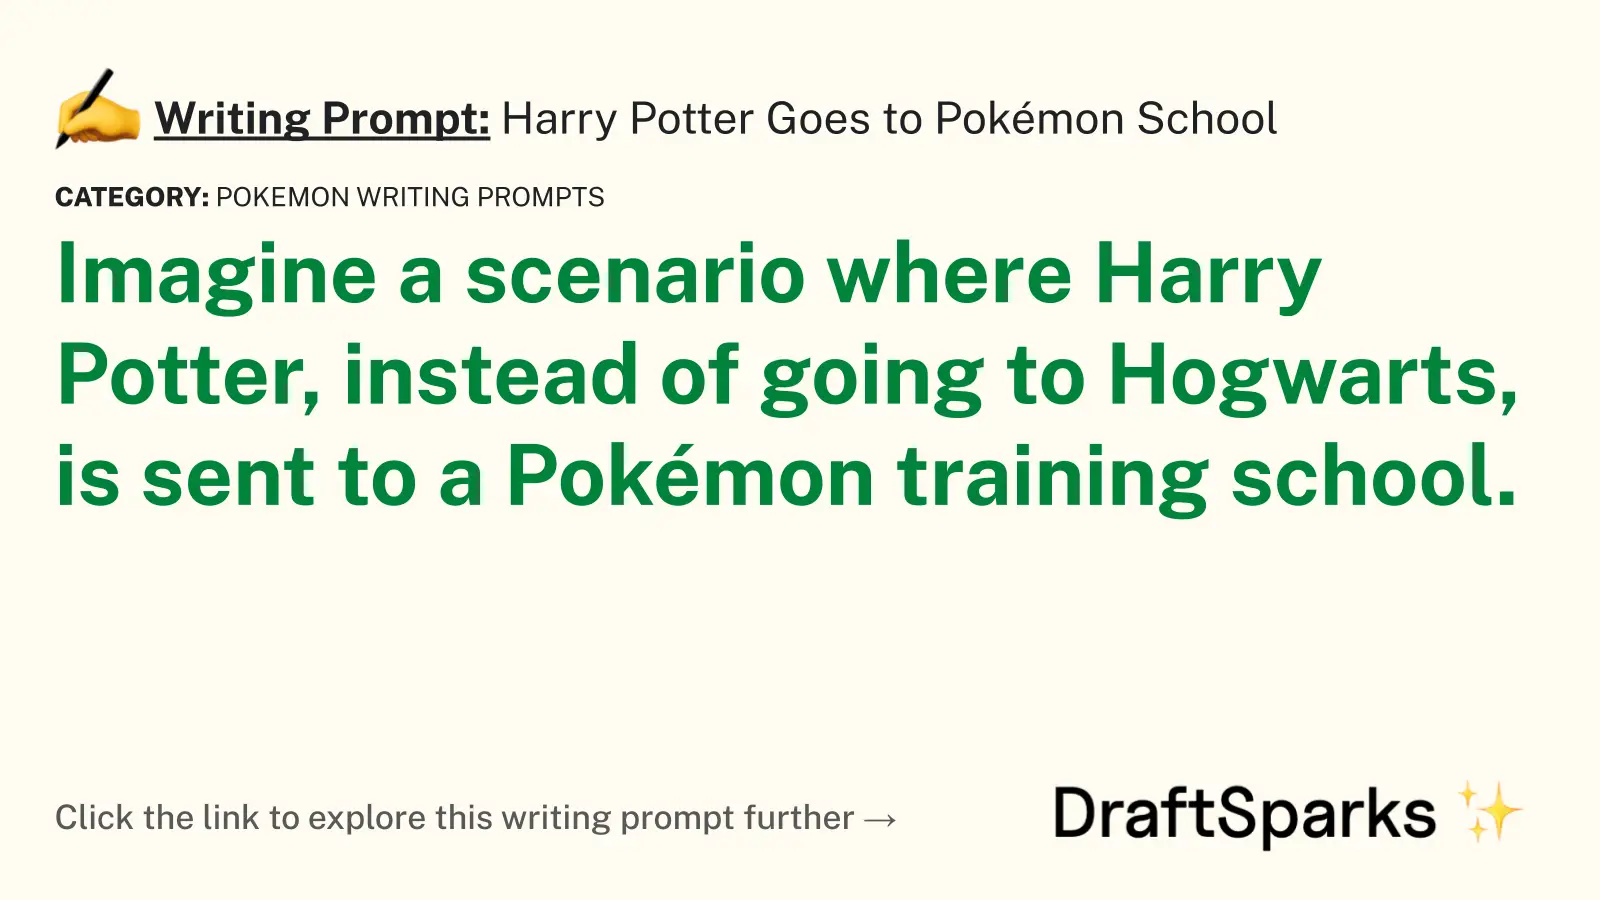 Harry Potter Goes to Pokémon School